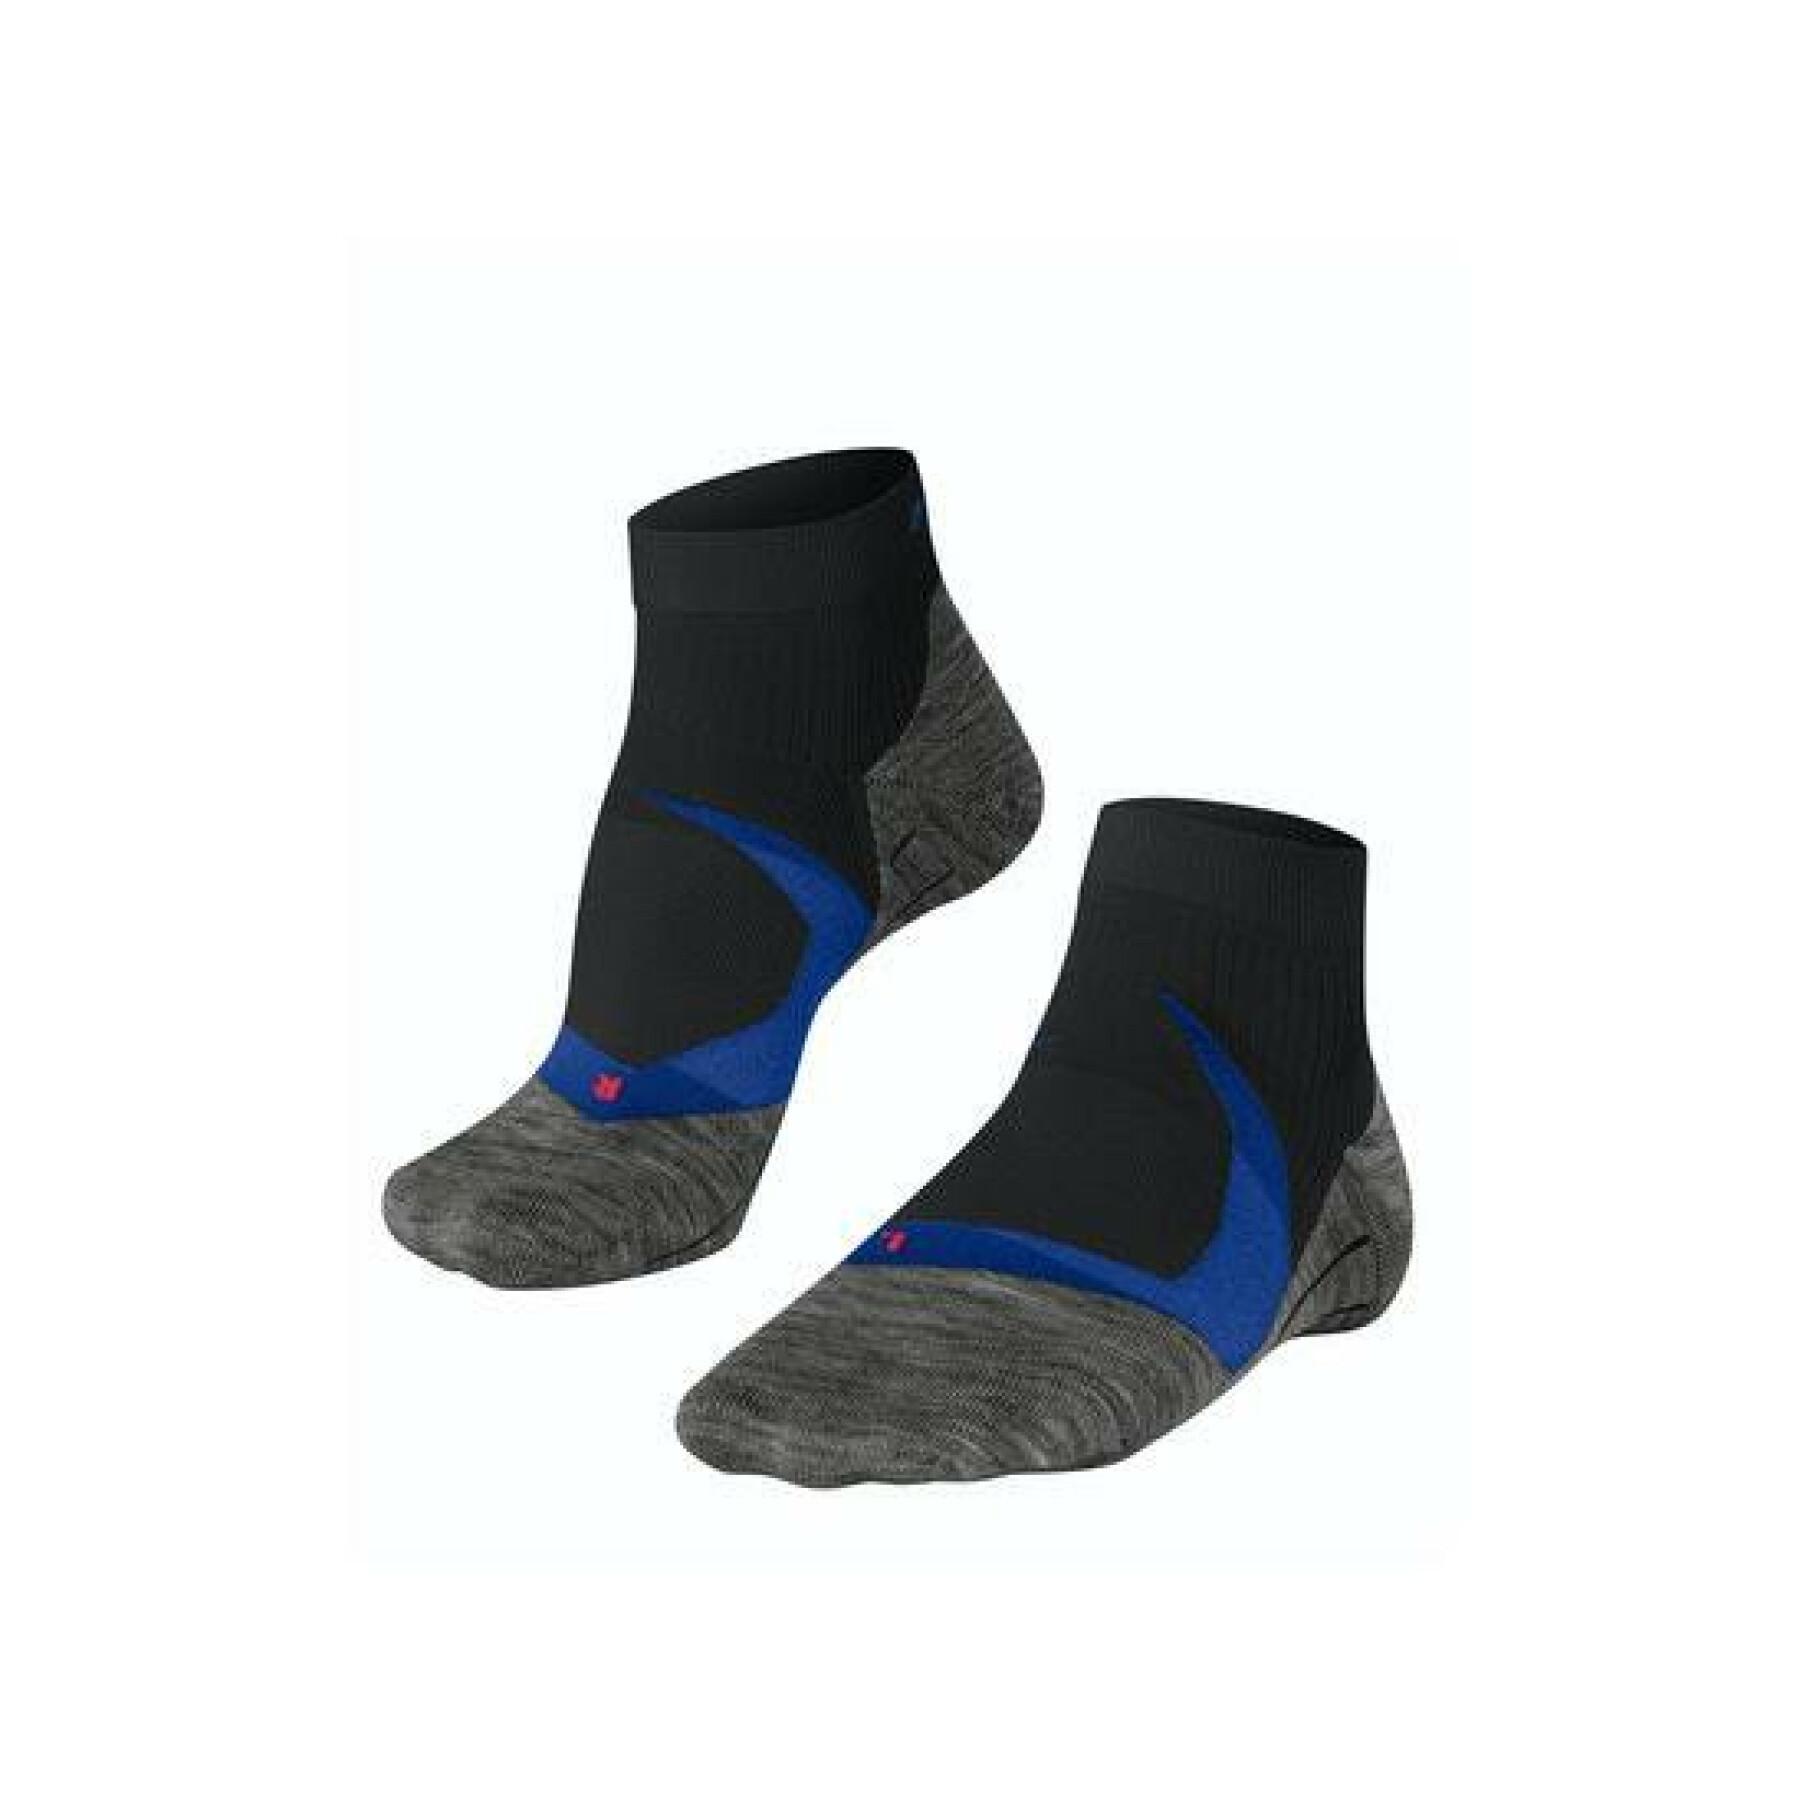 Hinder knelpunt Analytisch Short socks Falke Ru4 Cool - Socks - Men's wear - Handball wear